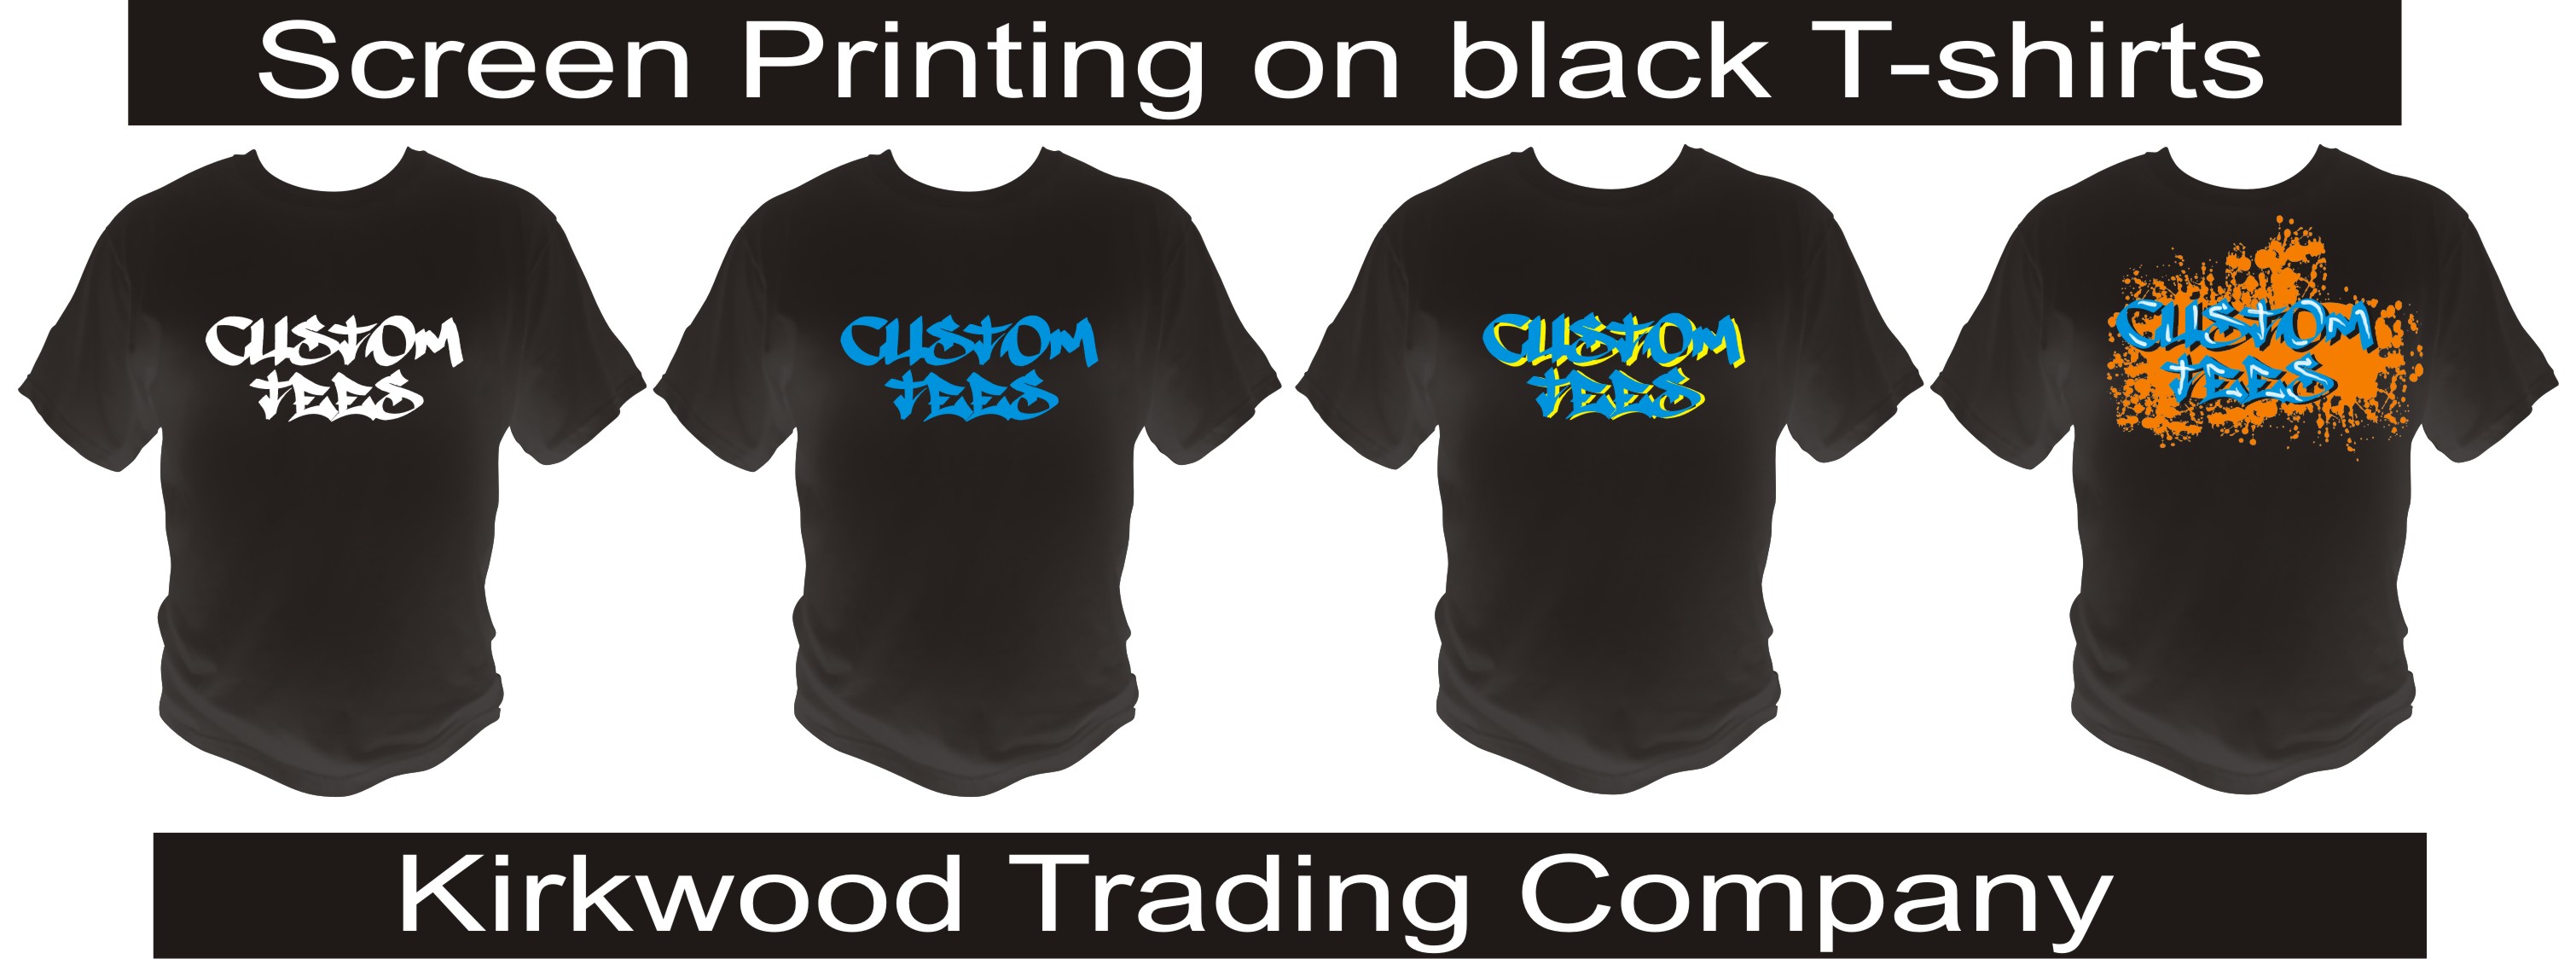 black t shirt printing